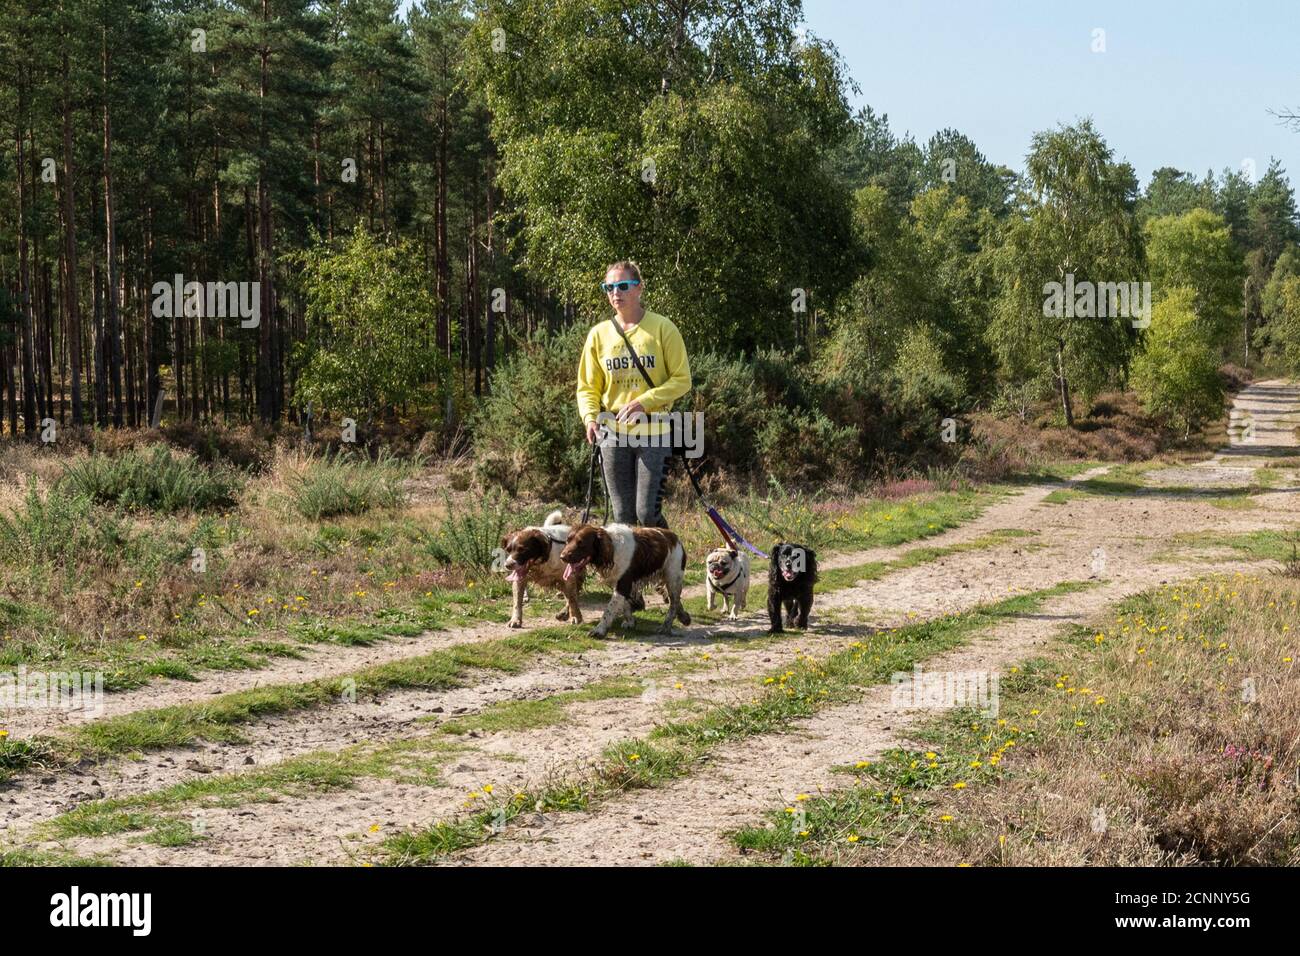 Professionnel chien marcheur prenant beaucoup de chiens pour une promenade dans la campagne, Royaume-Uni Banque D'Images